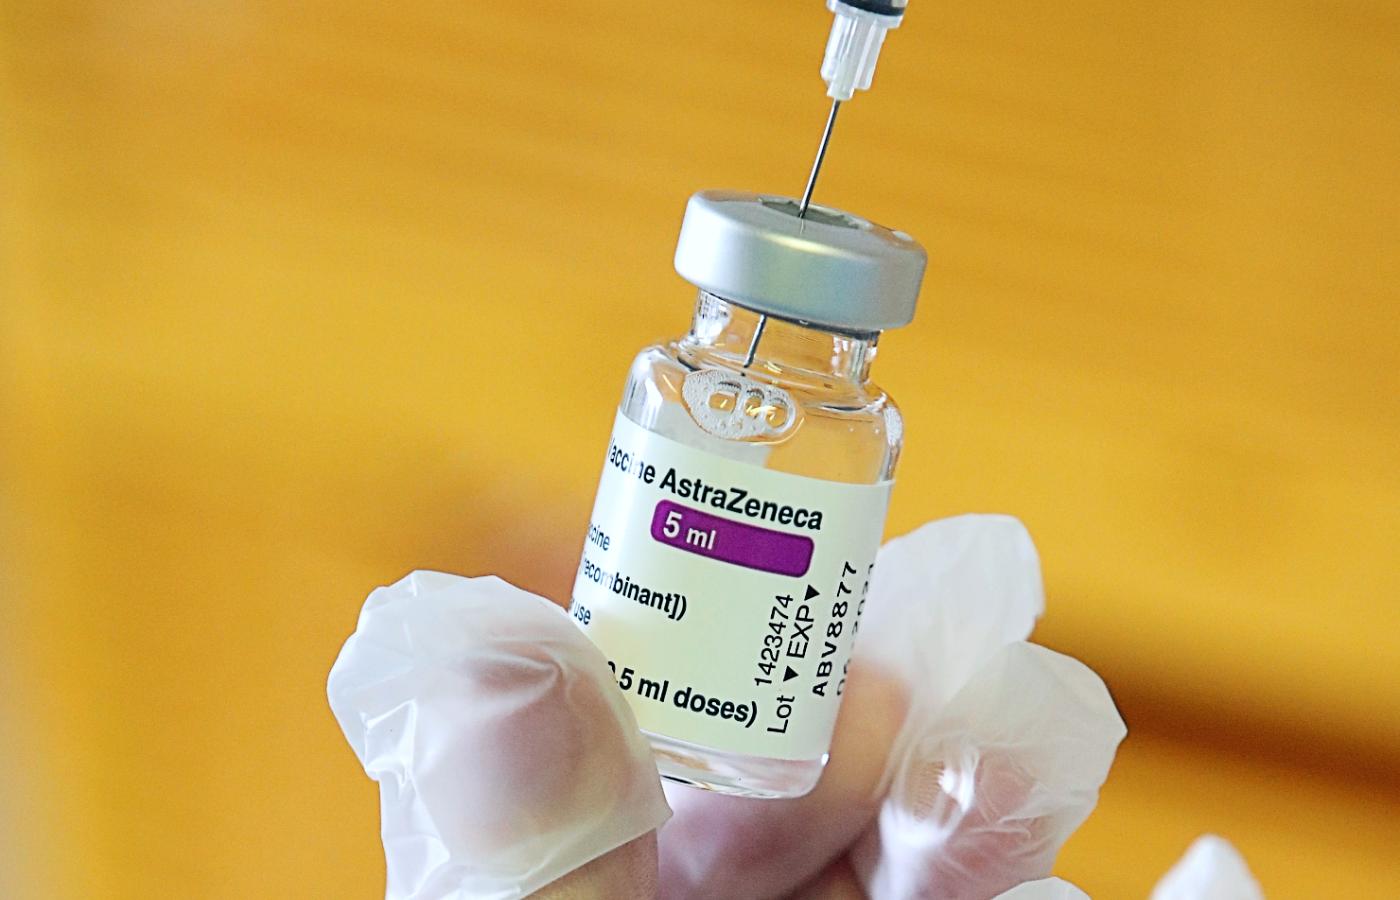 Podejrzenia naukowców budzi dość niezwykły charakter zakrzepów krwi. Mimo to większość ekspertów upiera się, że korzyści wynikające z przyjęcia szczepionki AstraZeneki nadal przewyższają ryzyko odmowy szczepienia.